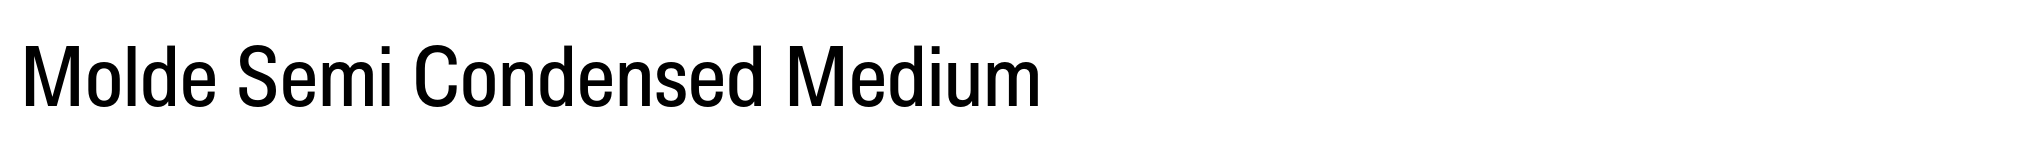 Molde Semi Condensed Medium image